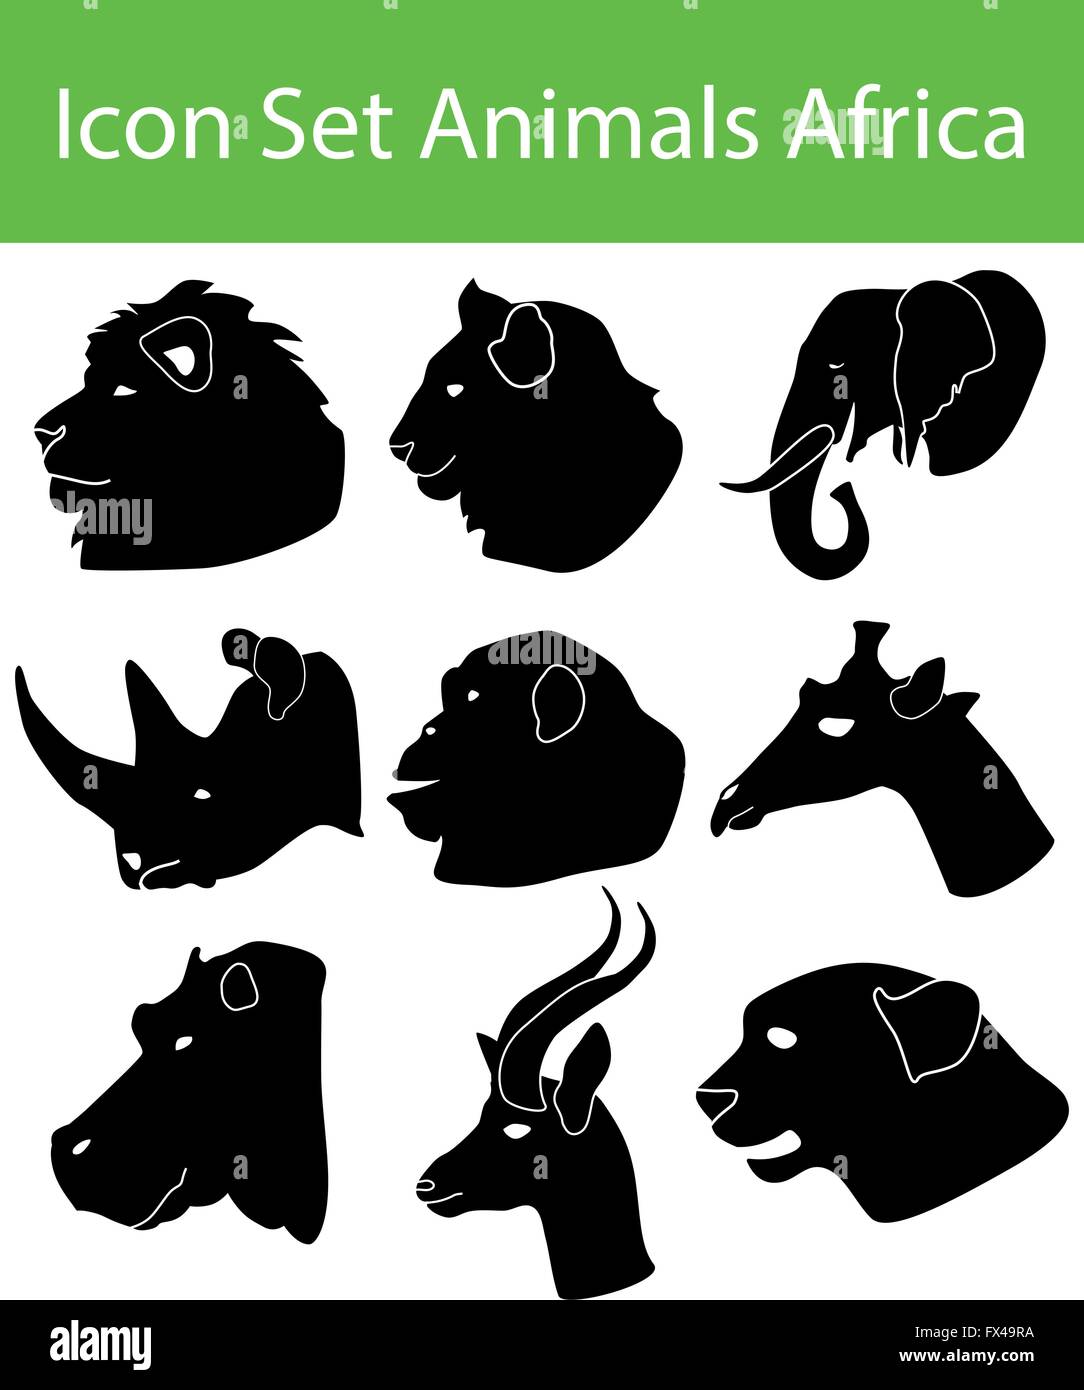 Icon Set Tiere Afrika mit 9 Icons für den kreativen Einsatz in Grafik-design Stock Vektor